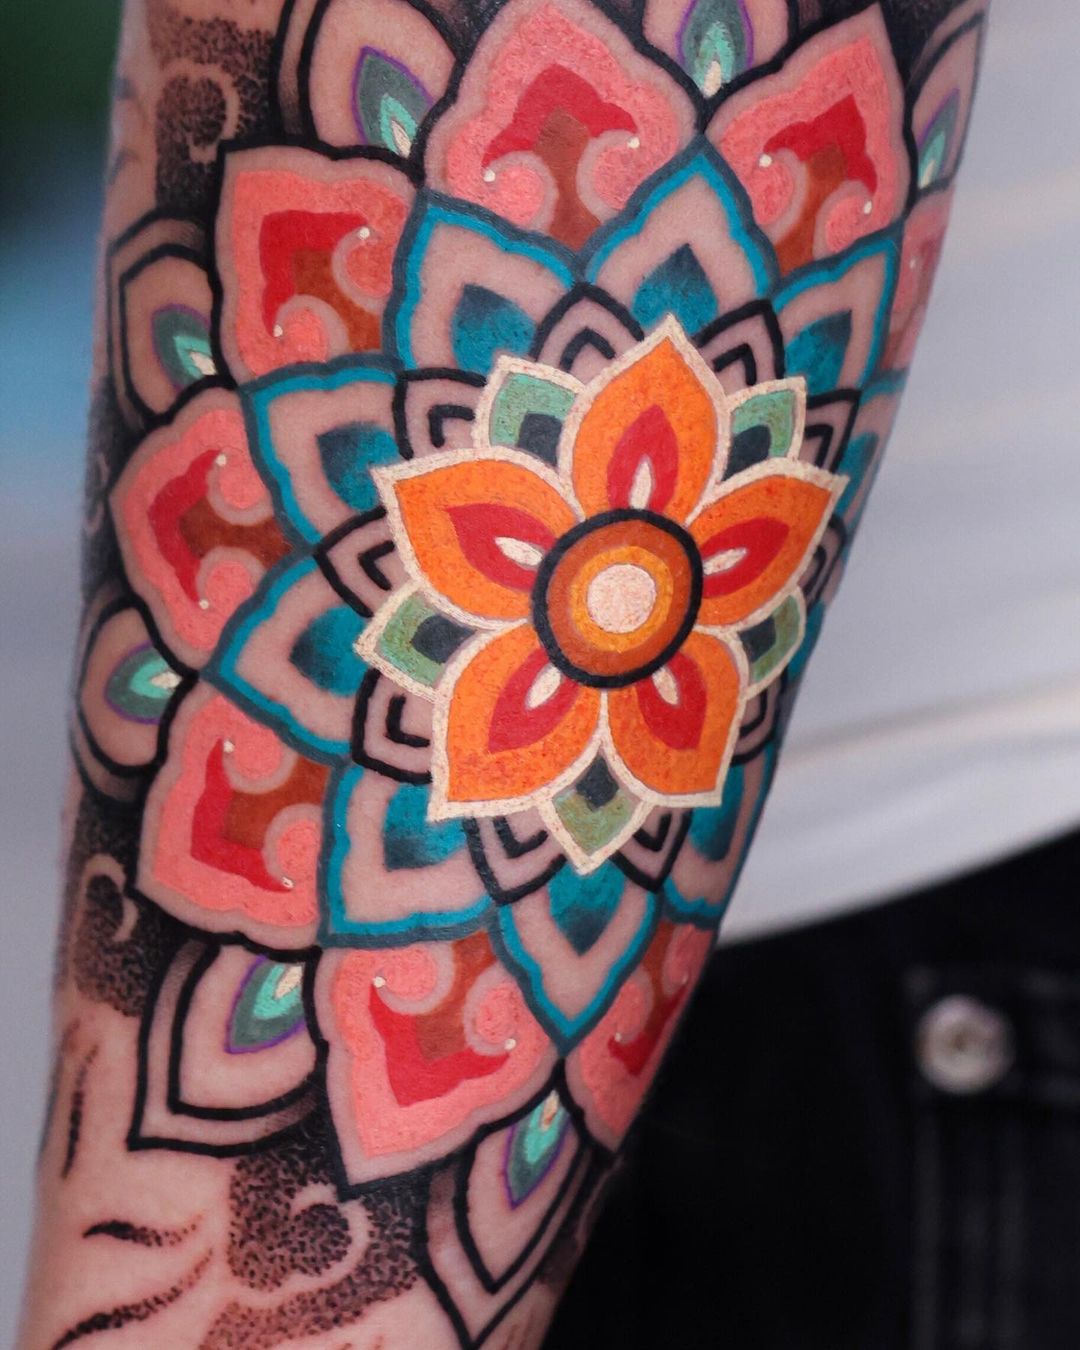 Mandala Knee Tattoo - Ryan Clarke at District Tattoo Company (DC) : r/ tattoos